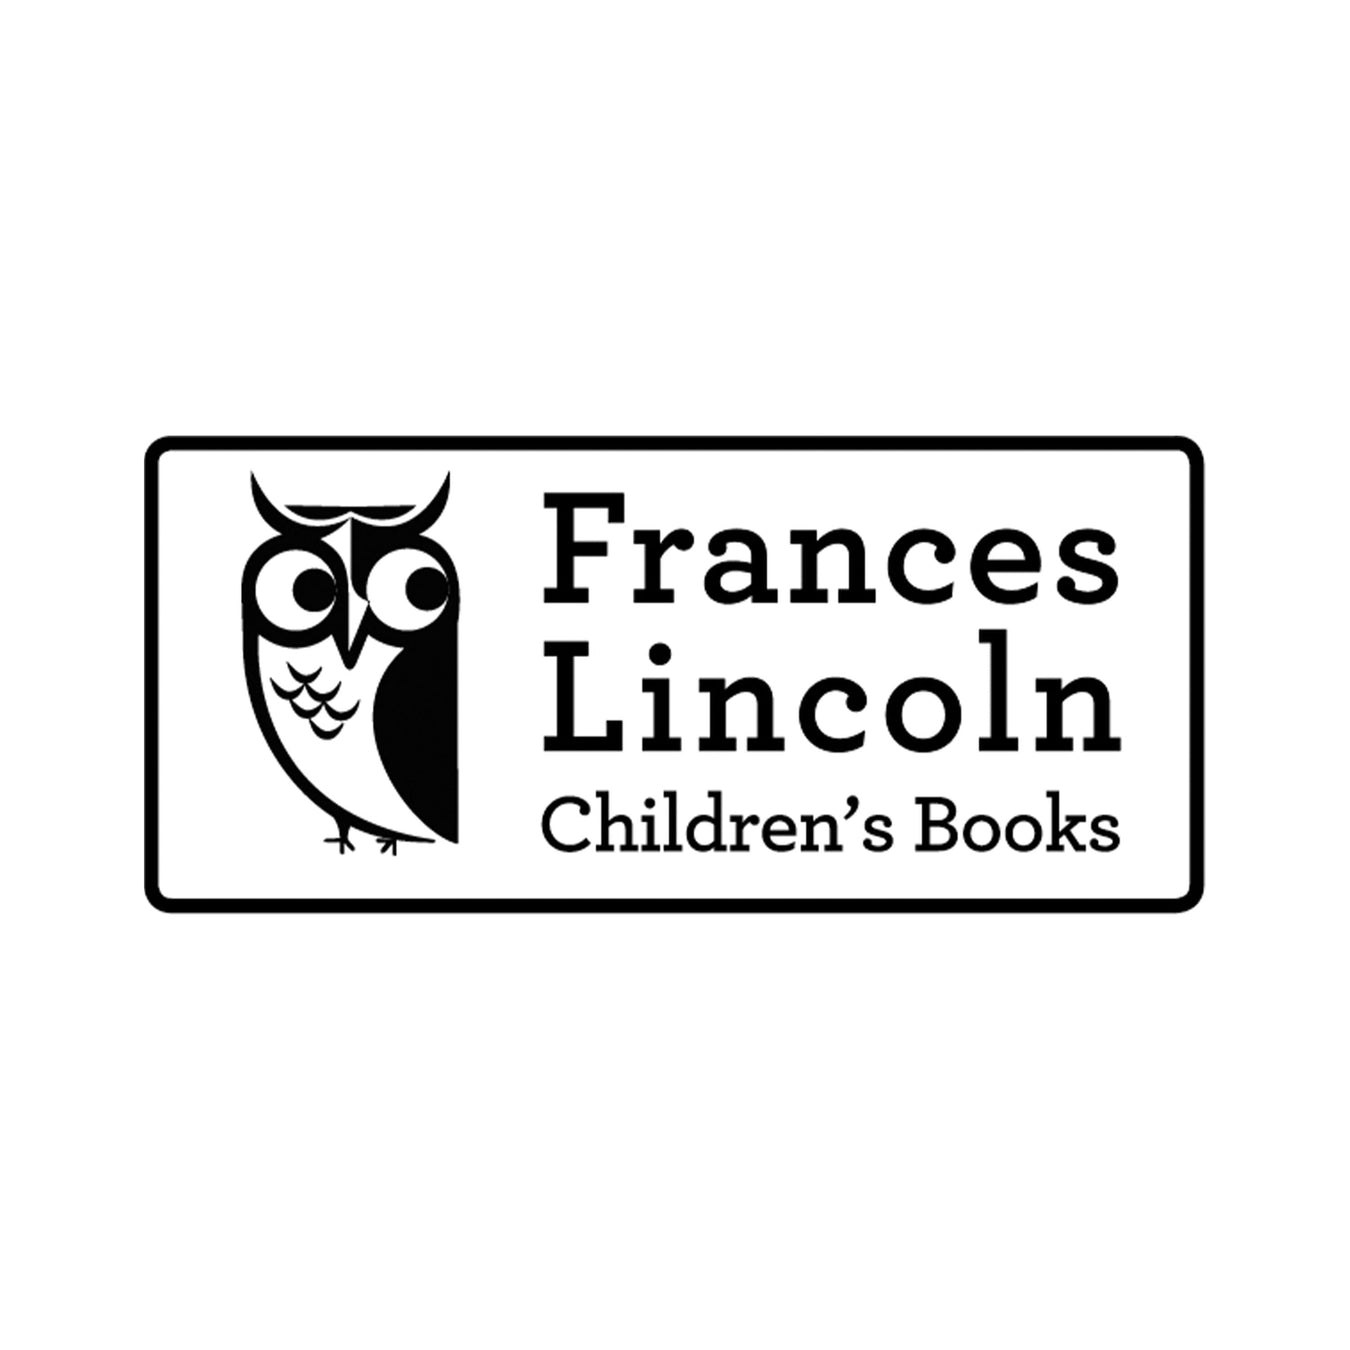 Frances Lincoln Children's Books